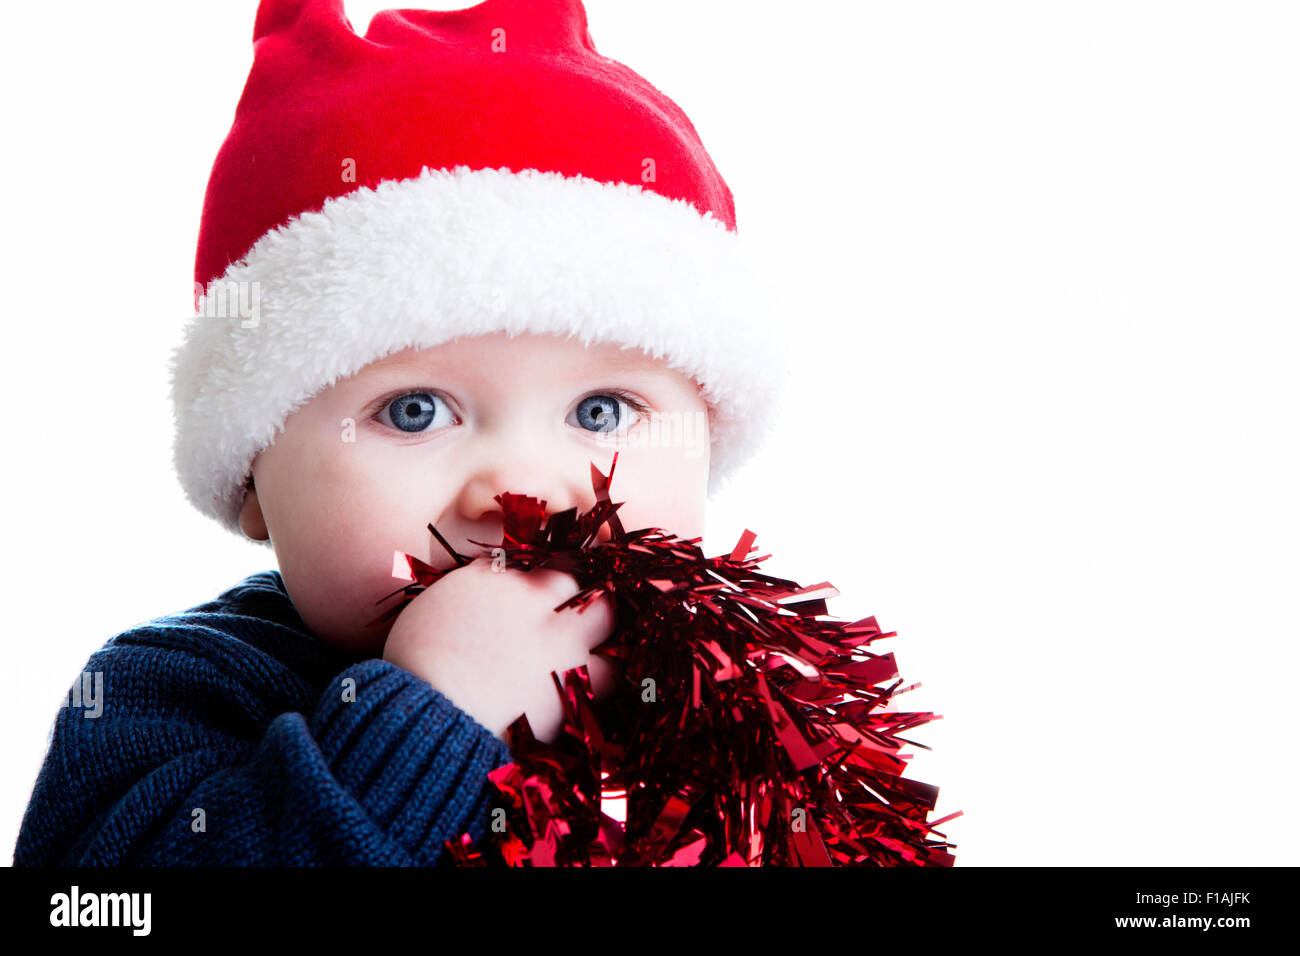 Un studio shot del bambino contro uno sfondo bianco che indossa un cappello di Natale e azienda tinsel Foto Stock